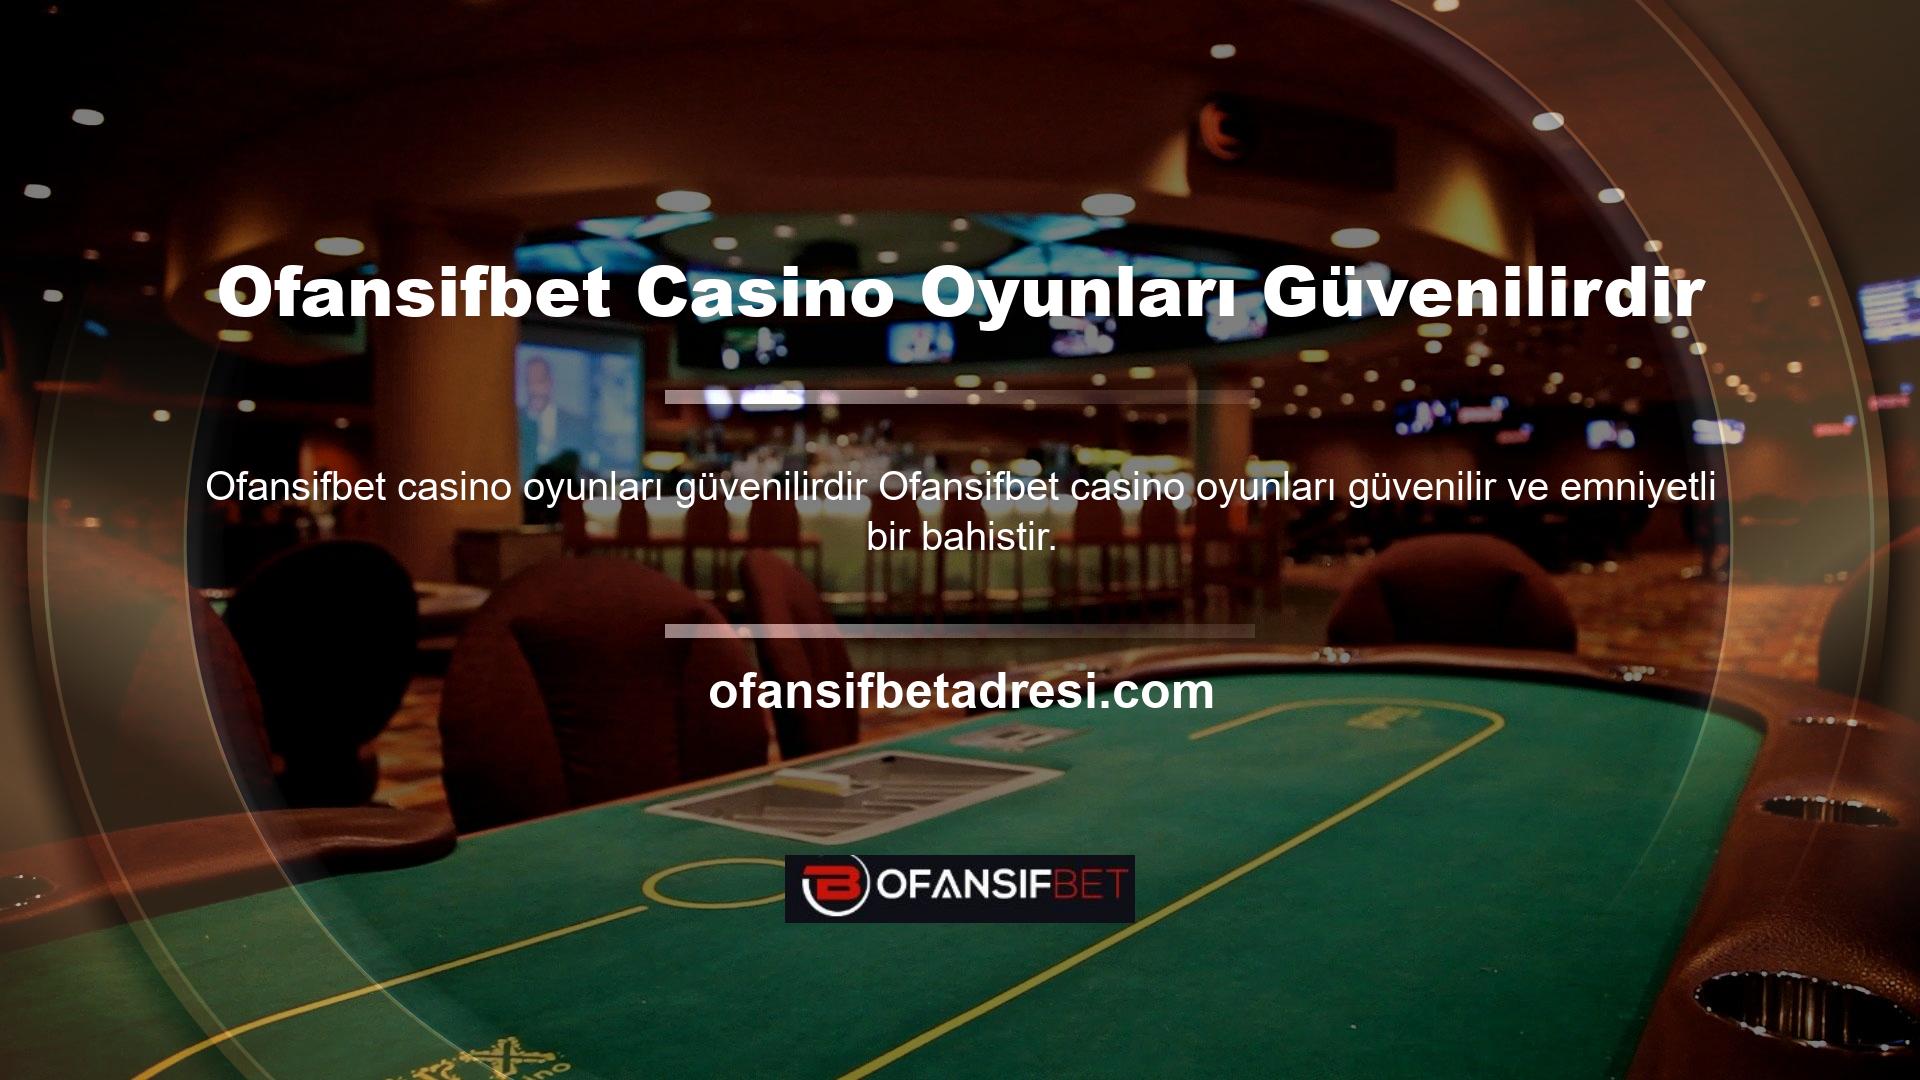 Ofansifbet, ülkede önemli bir kesinti yaşamayan az sayıdaki oyun ve casino oyun hizmetlerinden biridir